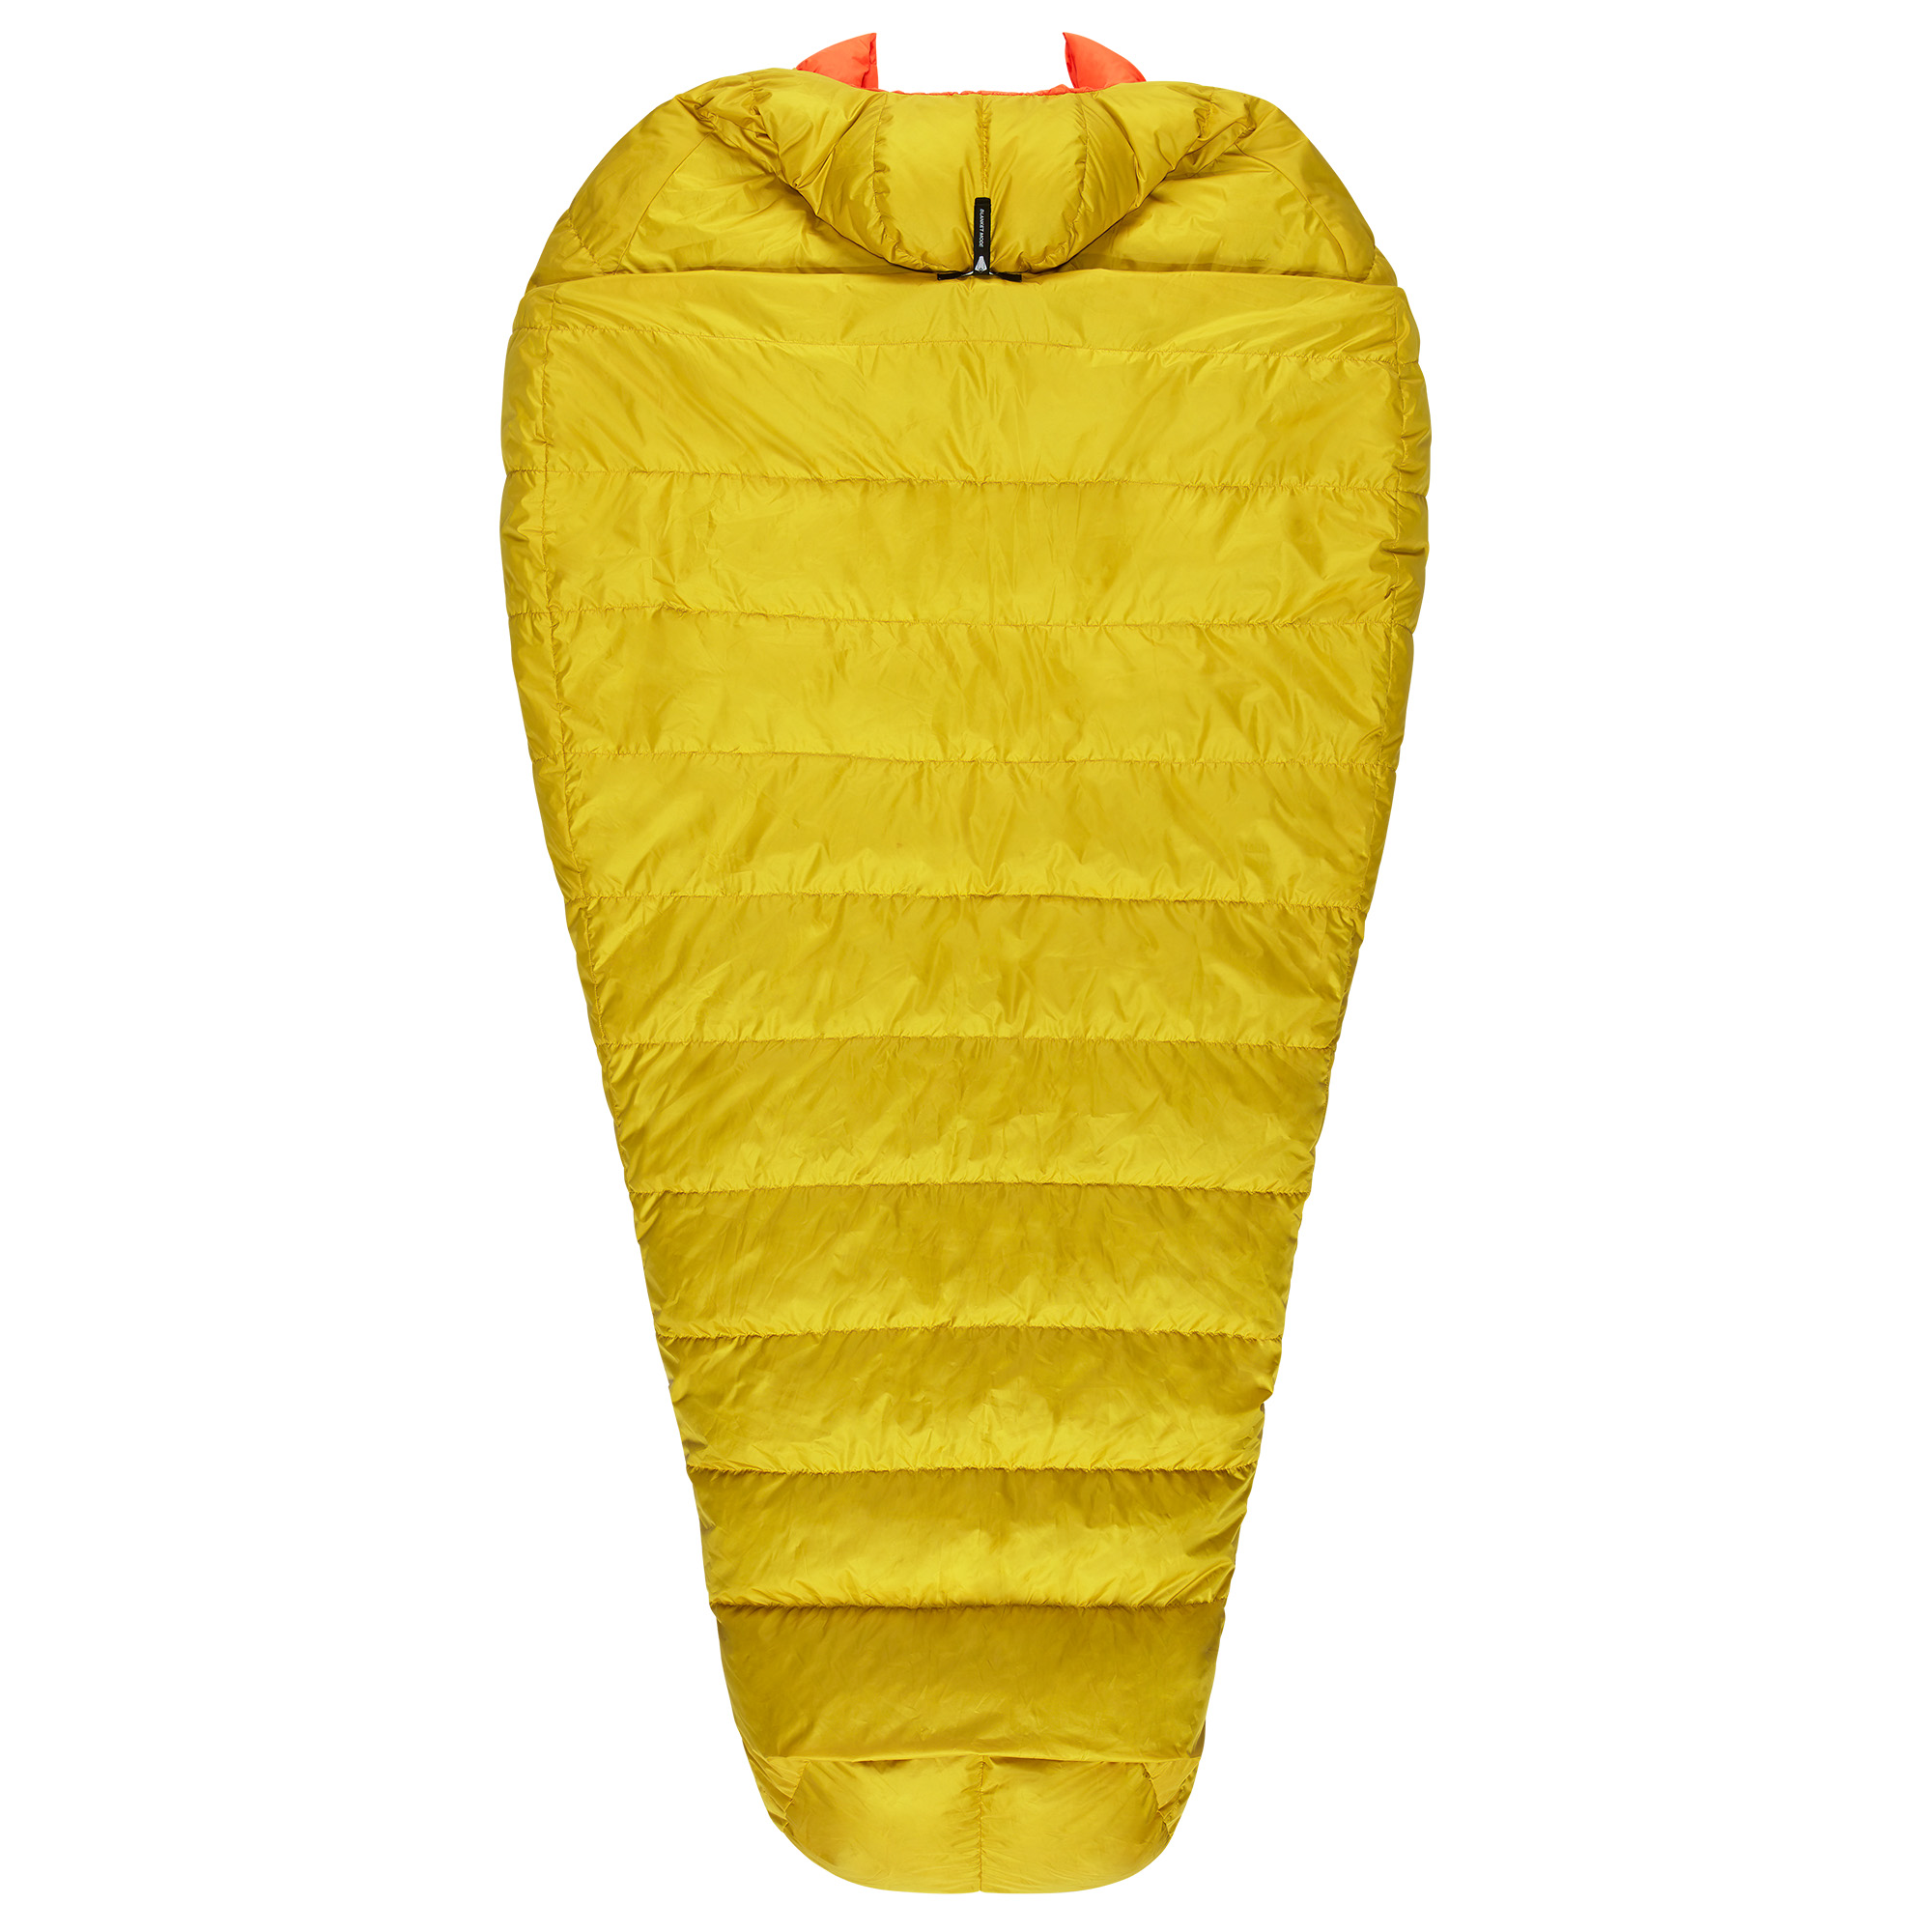 Mammut Women's Comfort Down Bag -7C Lightweight Sleeping Bag